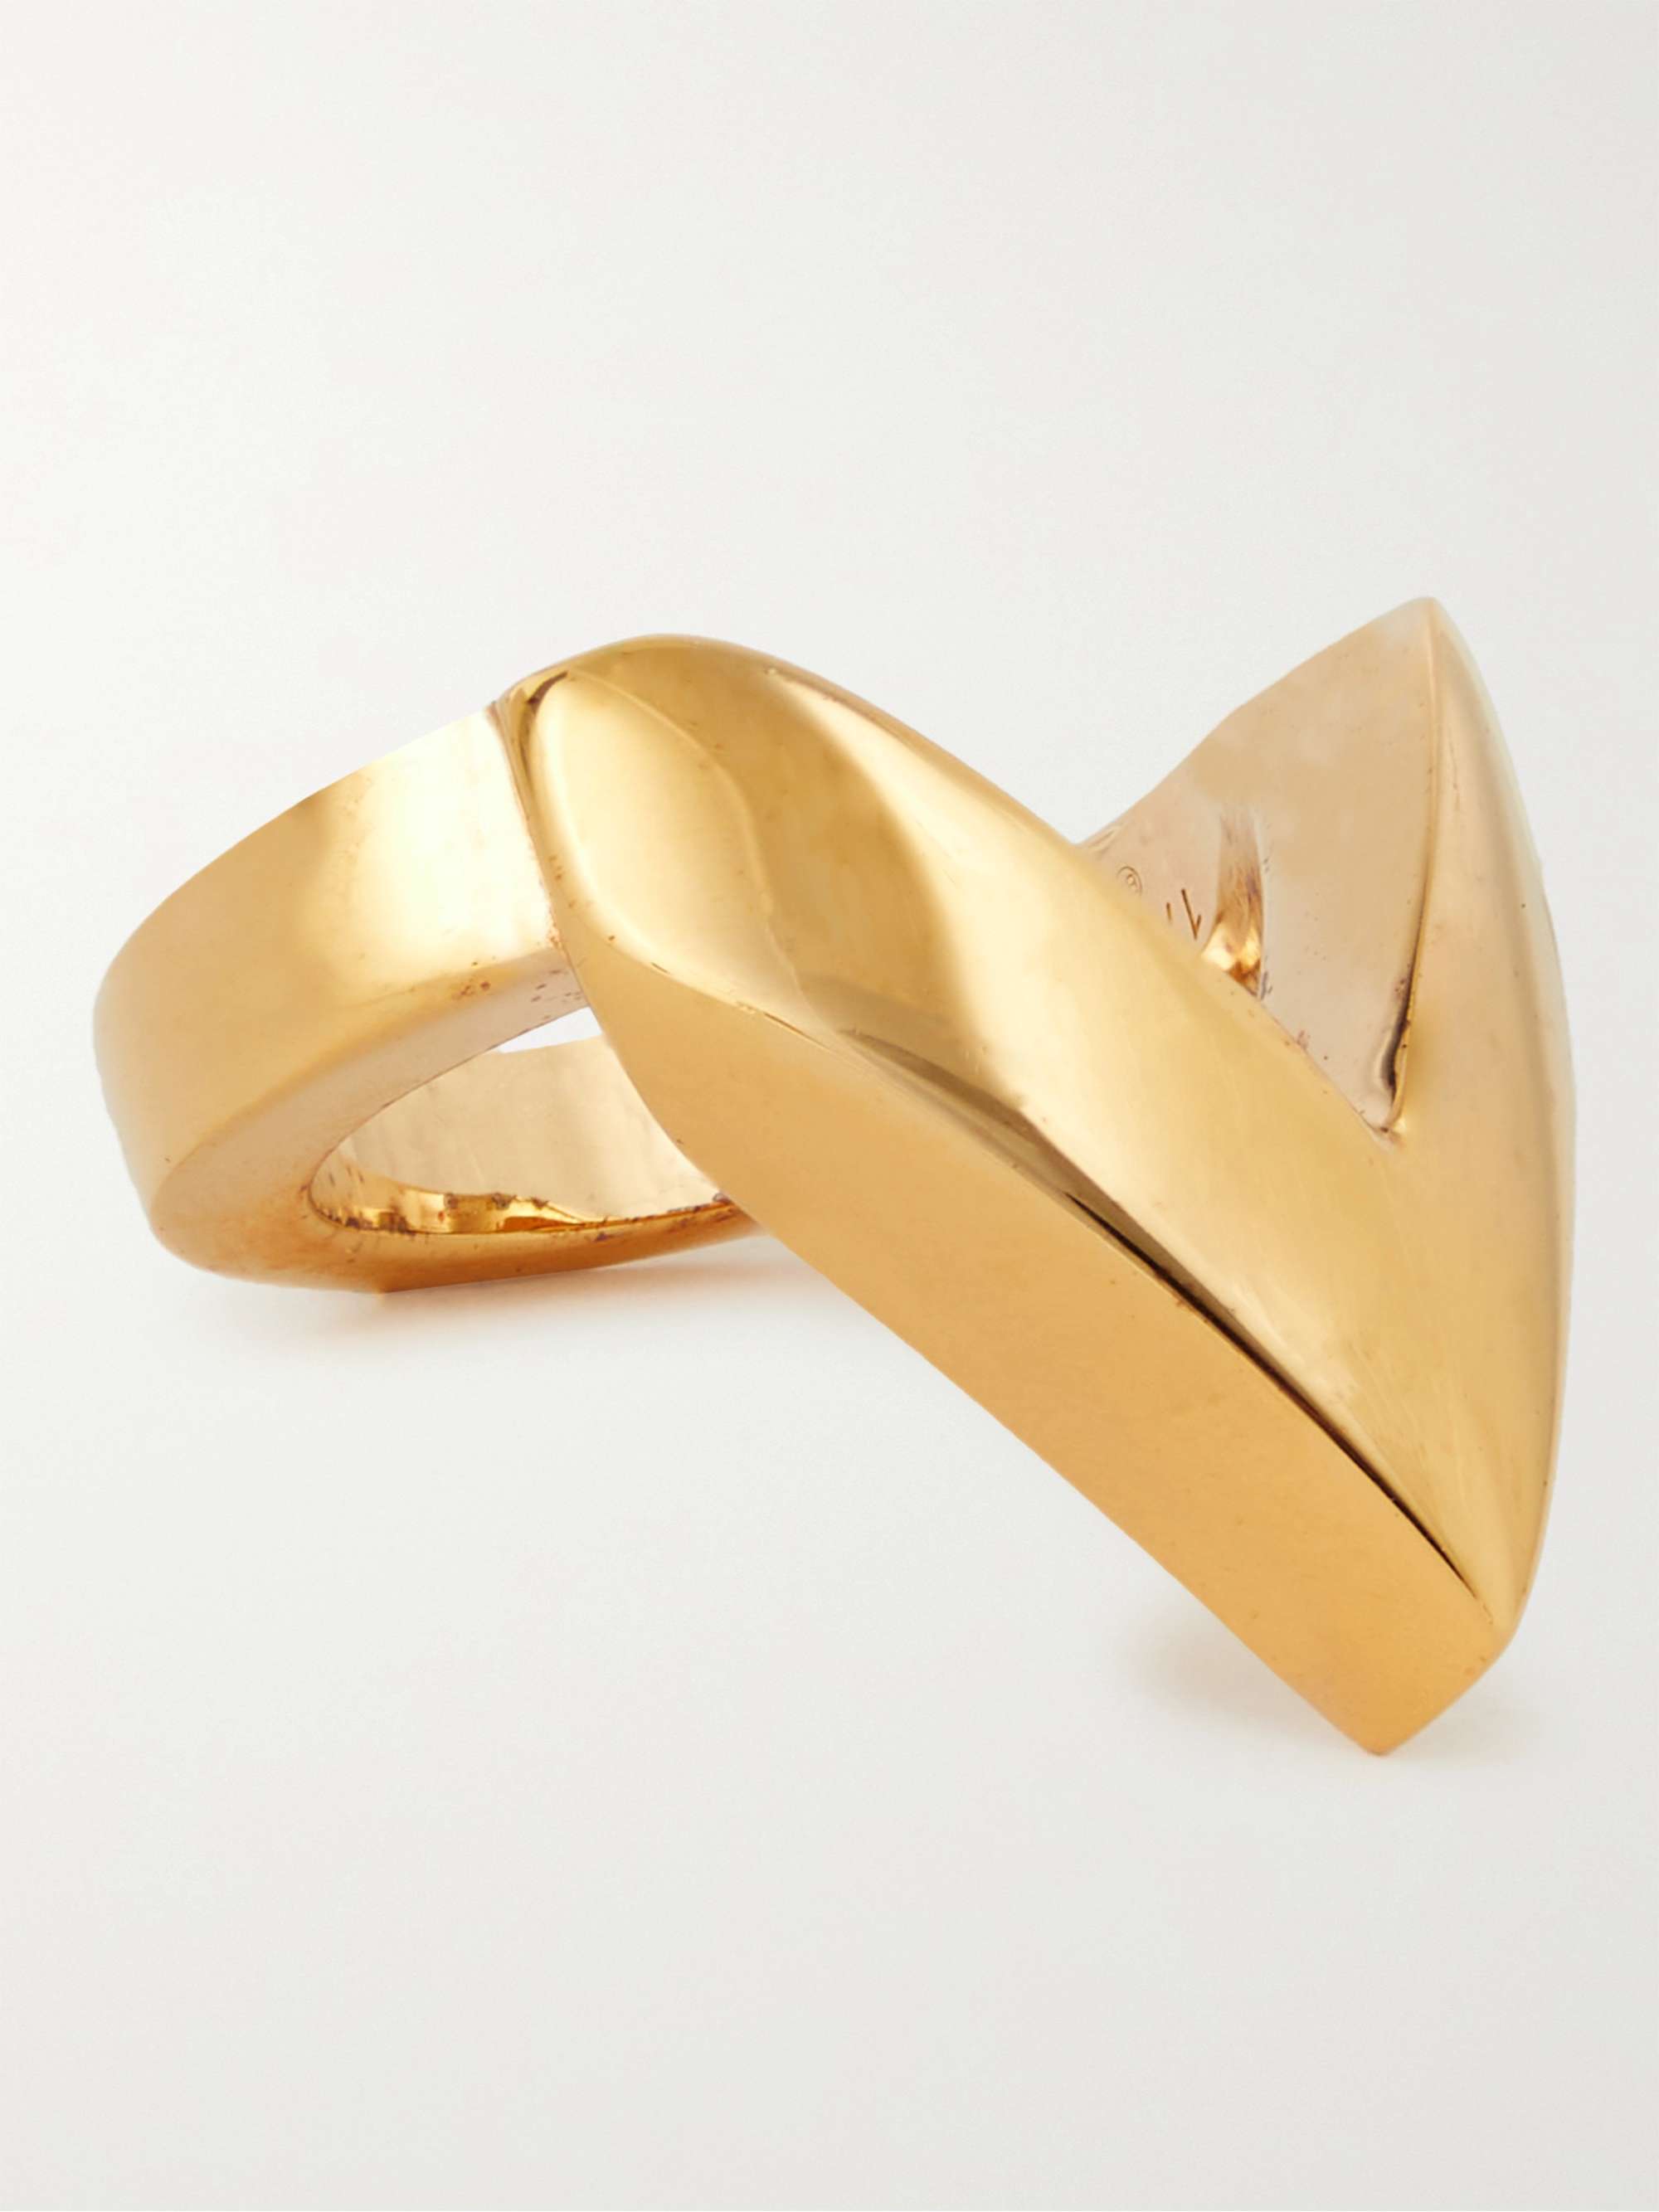 BOTTEGA VENETA Gold-Plated Ring for Men | MR PORTER